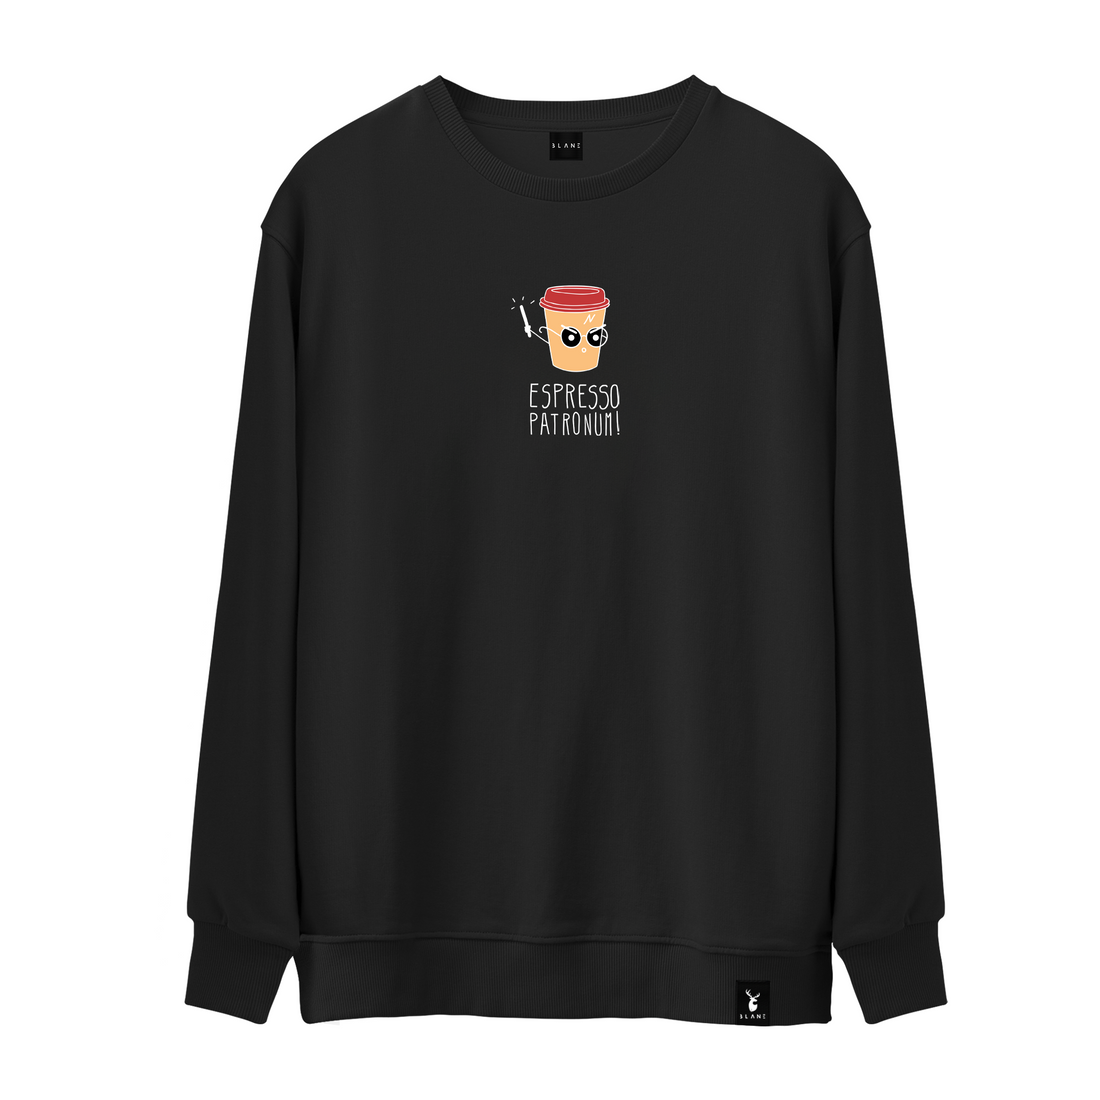 Espresso Patronum - Sweatshirt